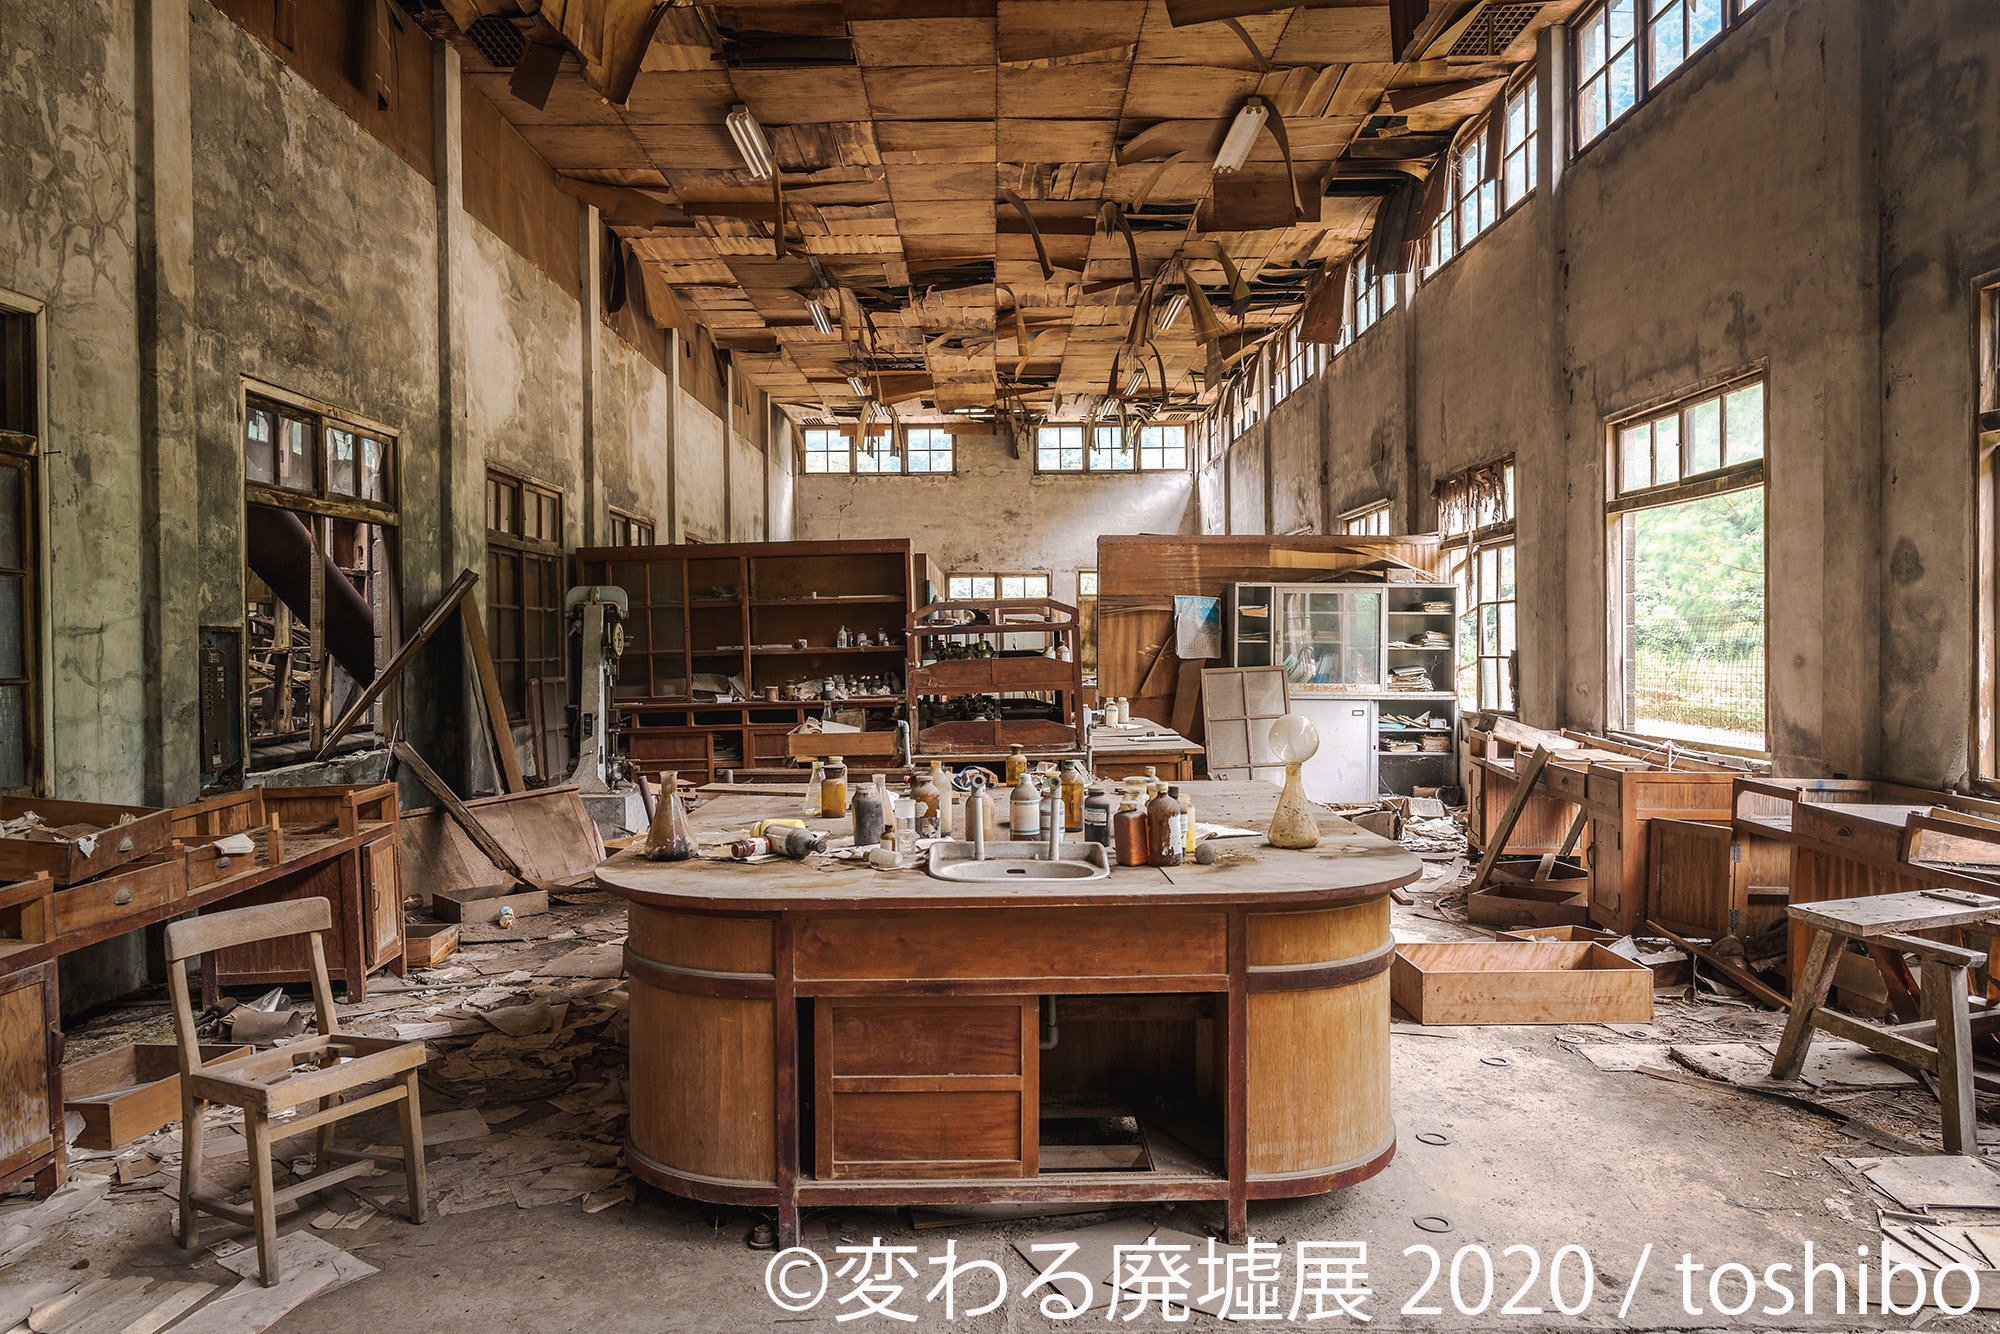 廃墟の概念が変わる 写真から感じる物語は鳥肌モノ 変わる廃墟展 3 6 東京で開催 臨場感ある動画も公開 株式会社baconのプレスリリース